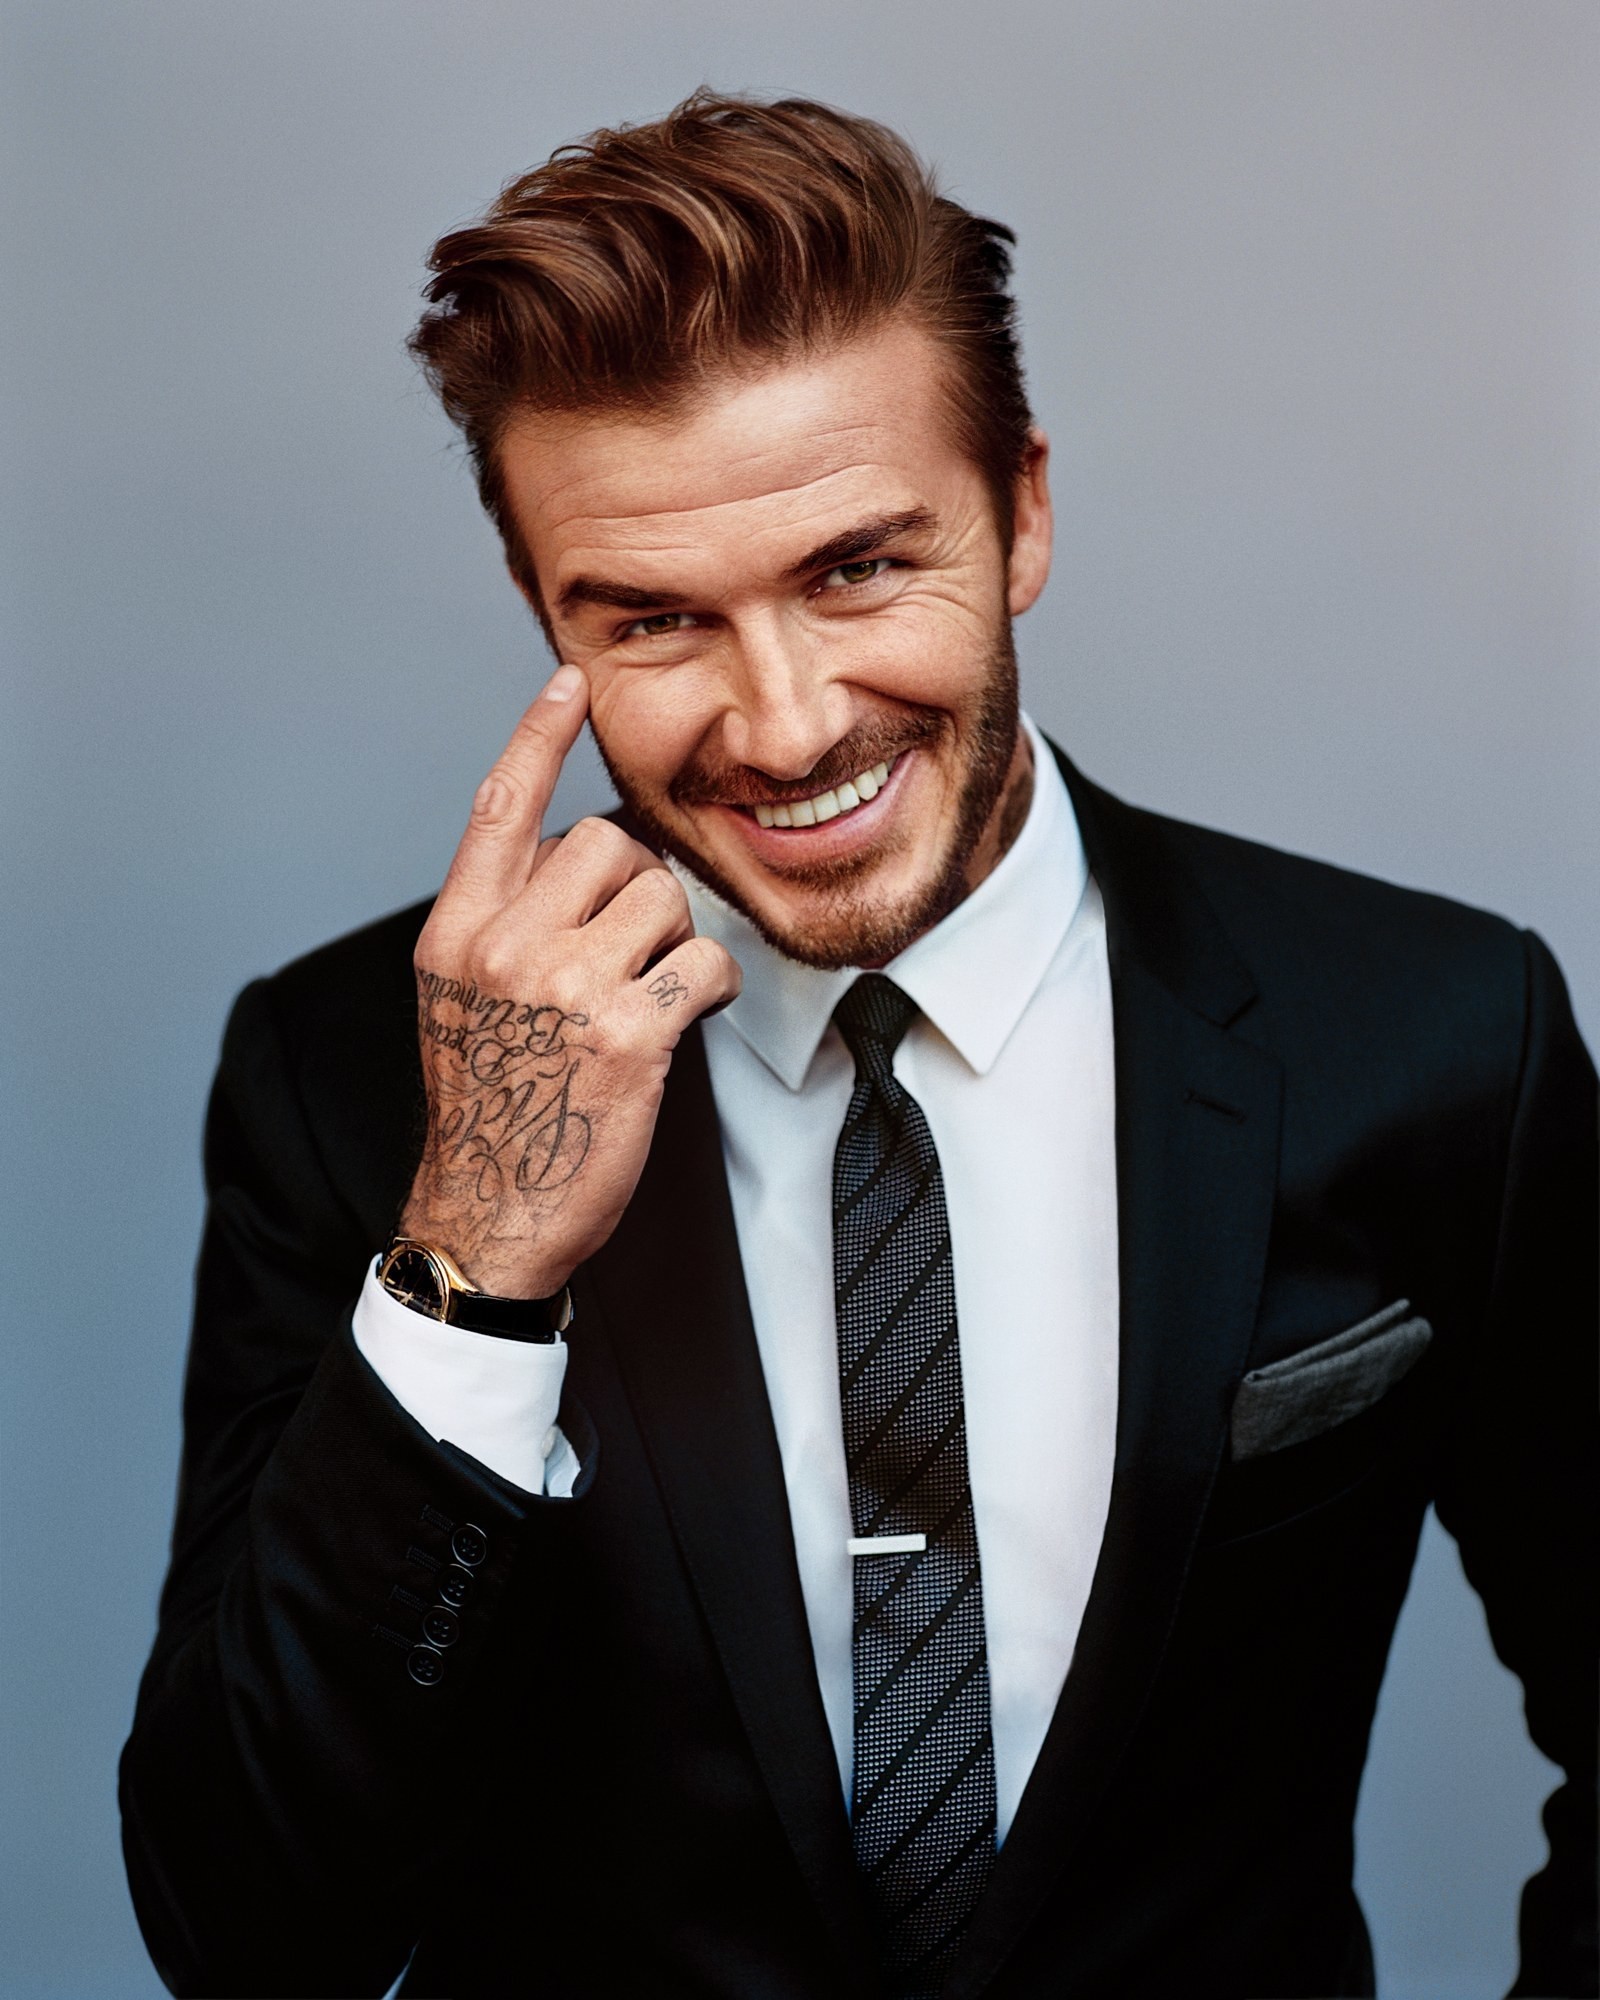 David Beckham đứng đầu danh sách những ngôi sao bóng đá có ngoại hình hấp dẫn nhất.